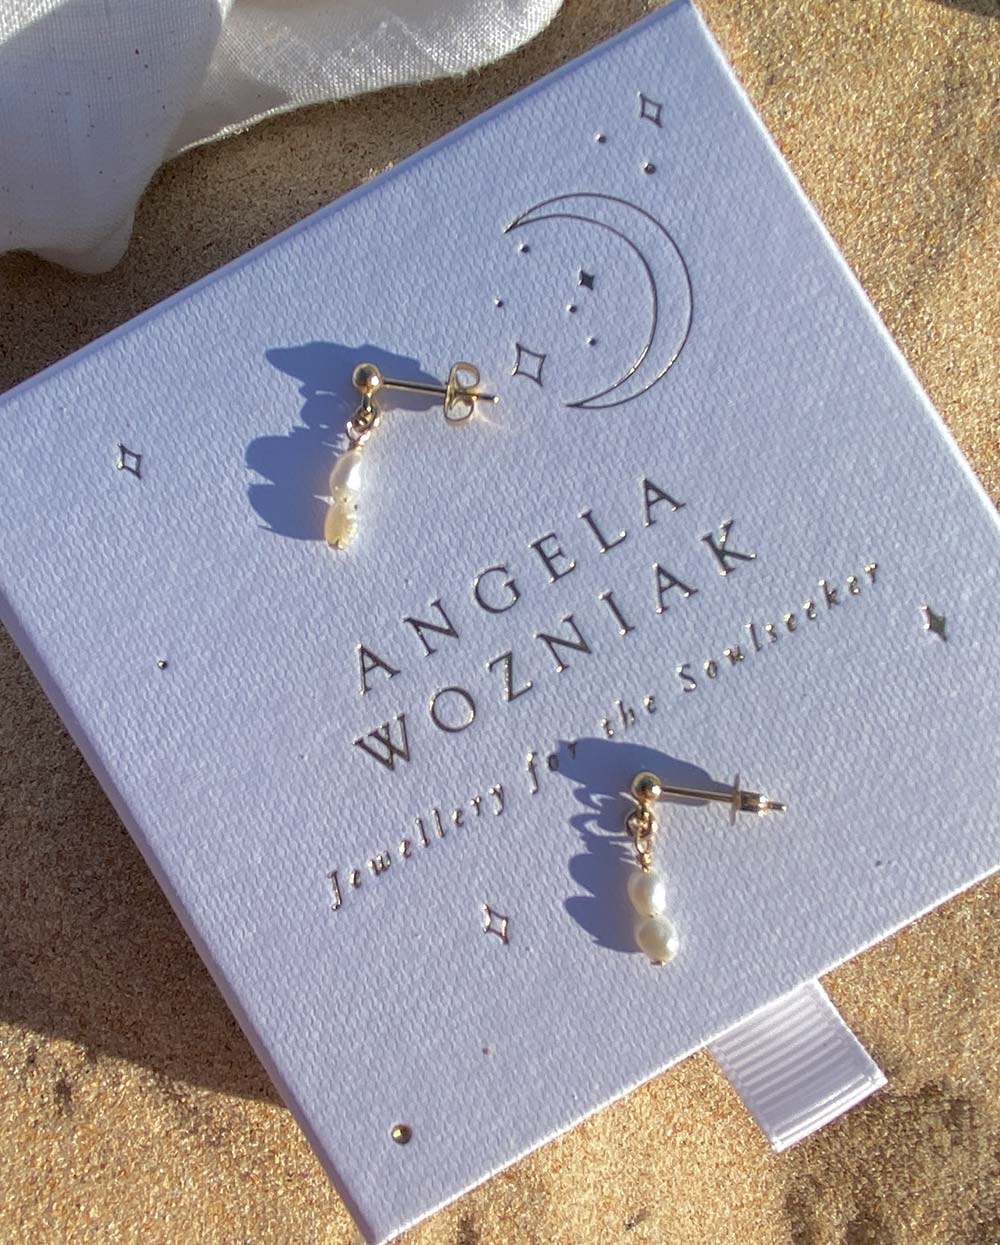 Fiji Pearl Drop Earrings - Angela Wozniak Jewellery